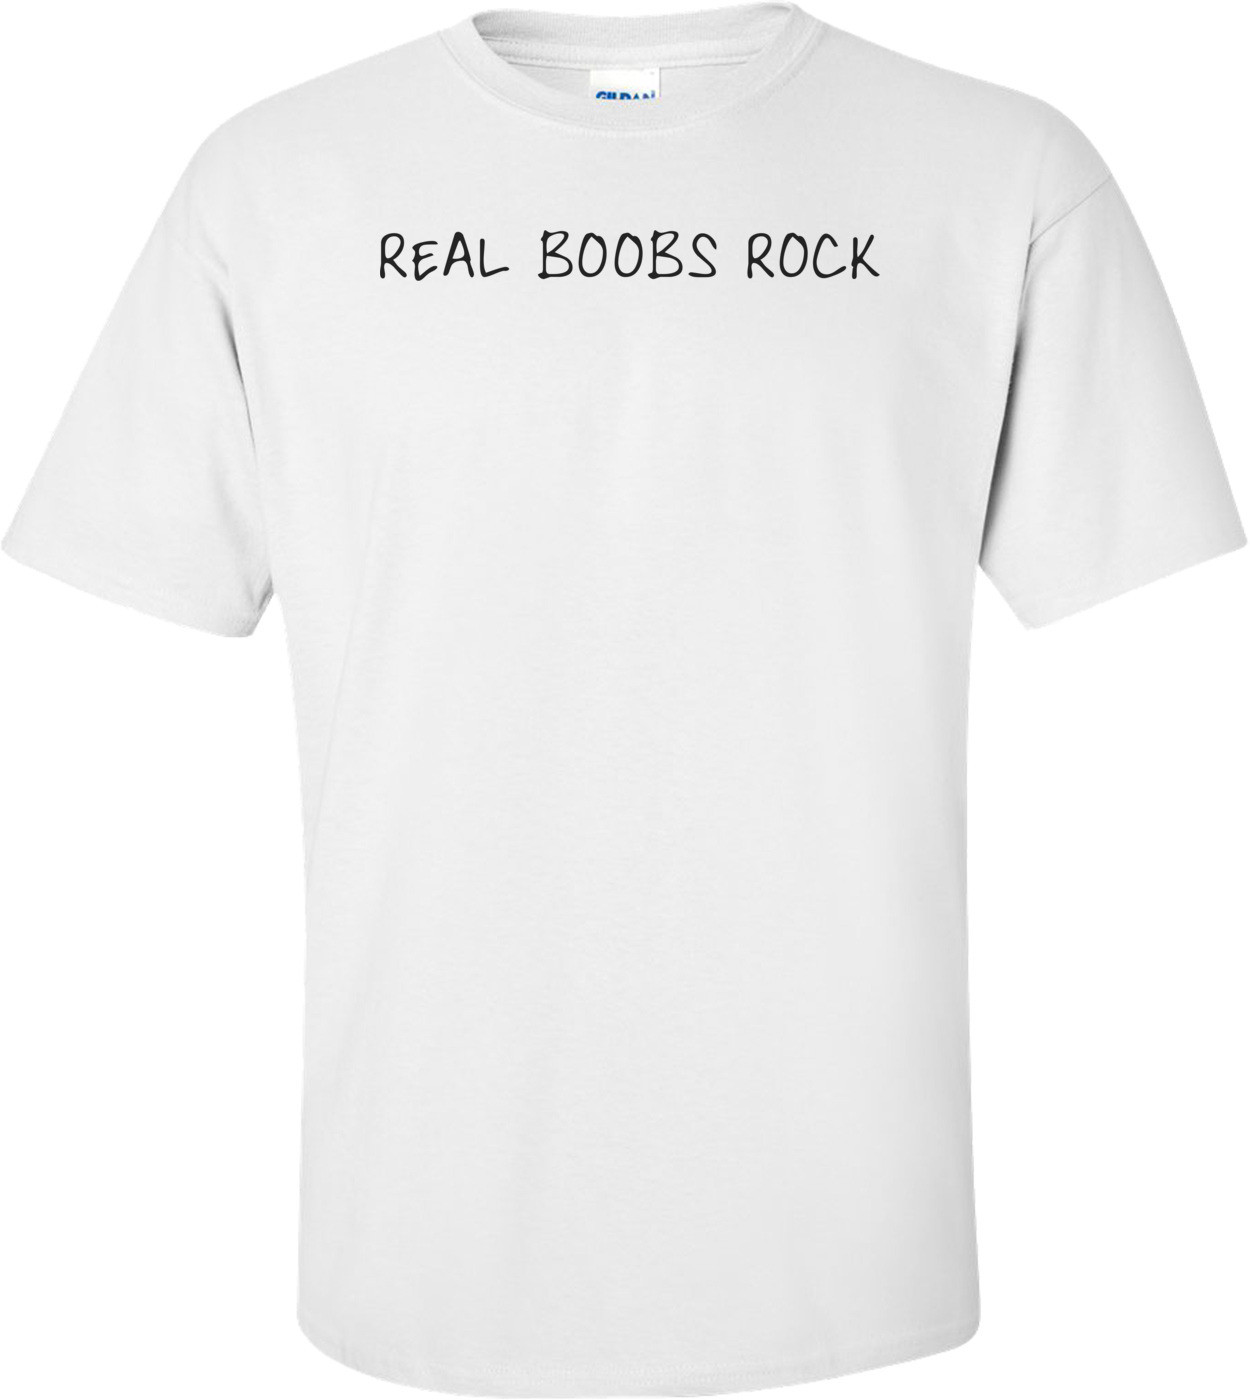 Real Boobs Rock Shirt